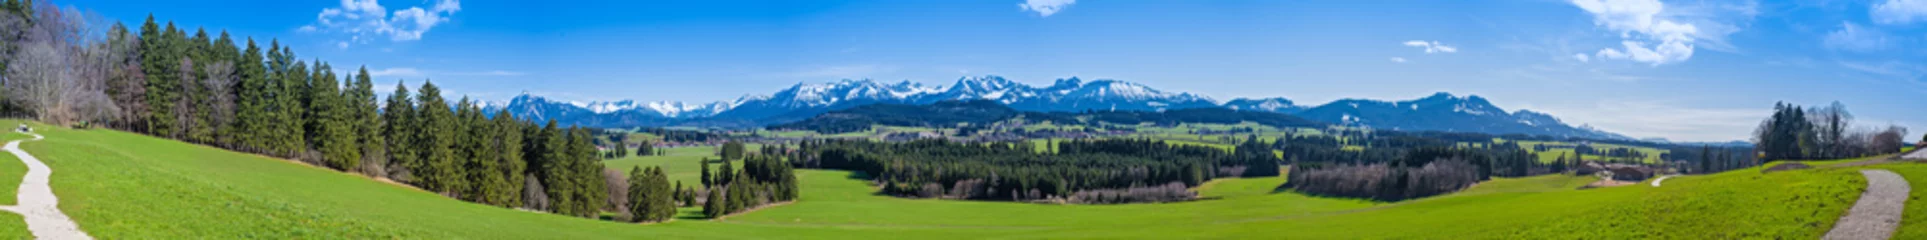 Tuinposter Wandelpad door de Allgäu met uitzicht op de Alpen - panorama in hoge resolutie © reichdernatur